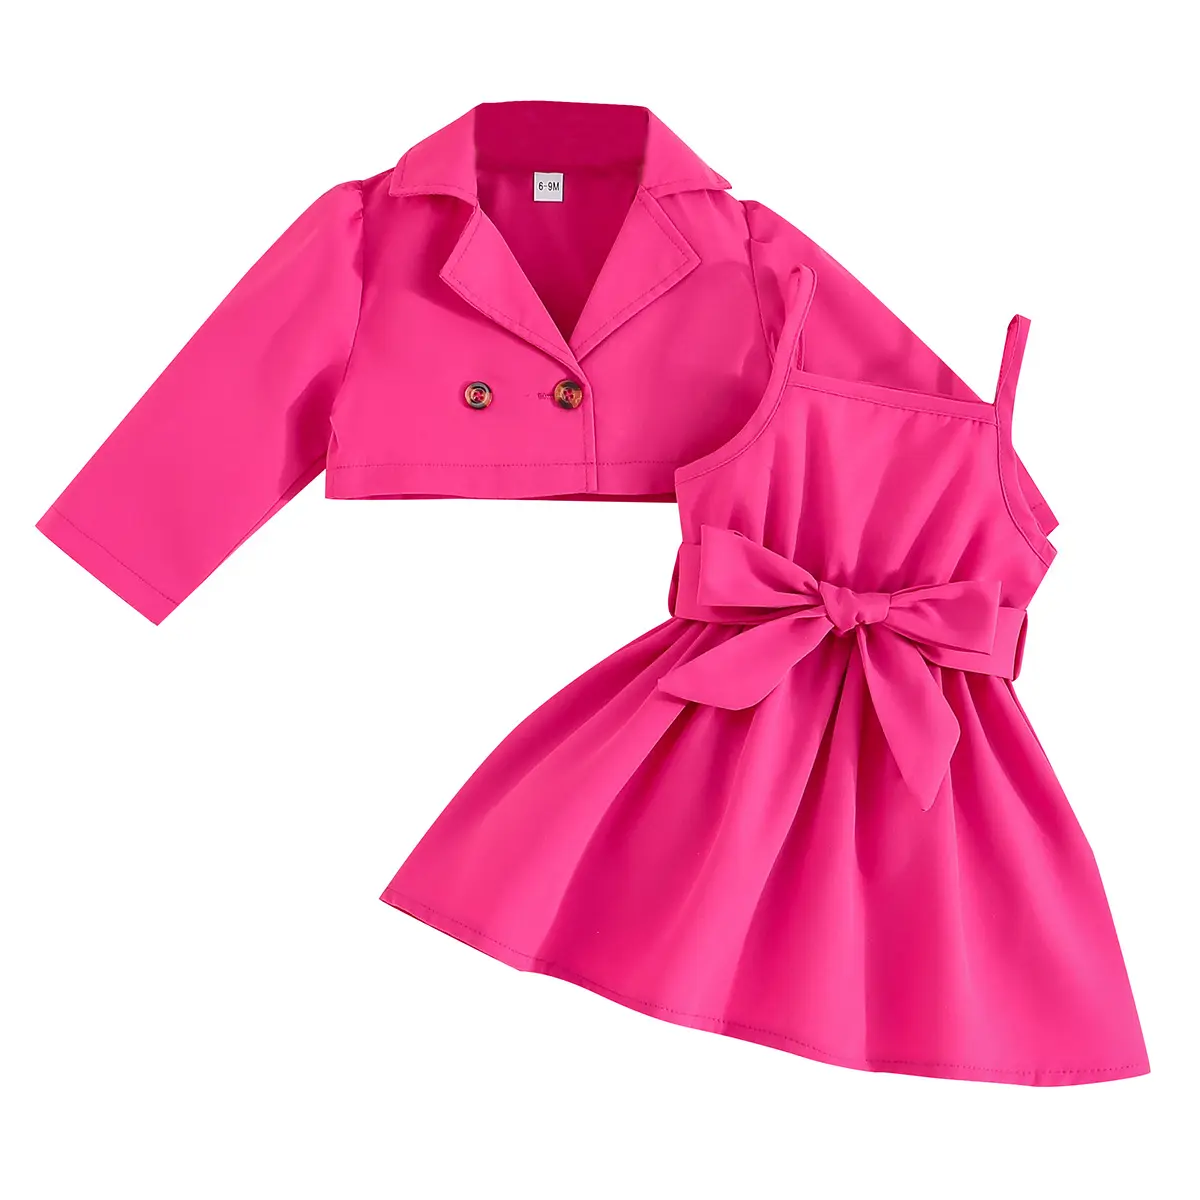 Conjuntos de ropa de otoño para niñas pequeñas conjuntos de ropa de color sólido para niñas de 1 año conjuntos de ropa de moda para niñas lindas